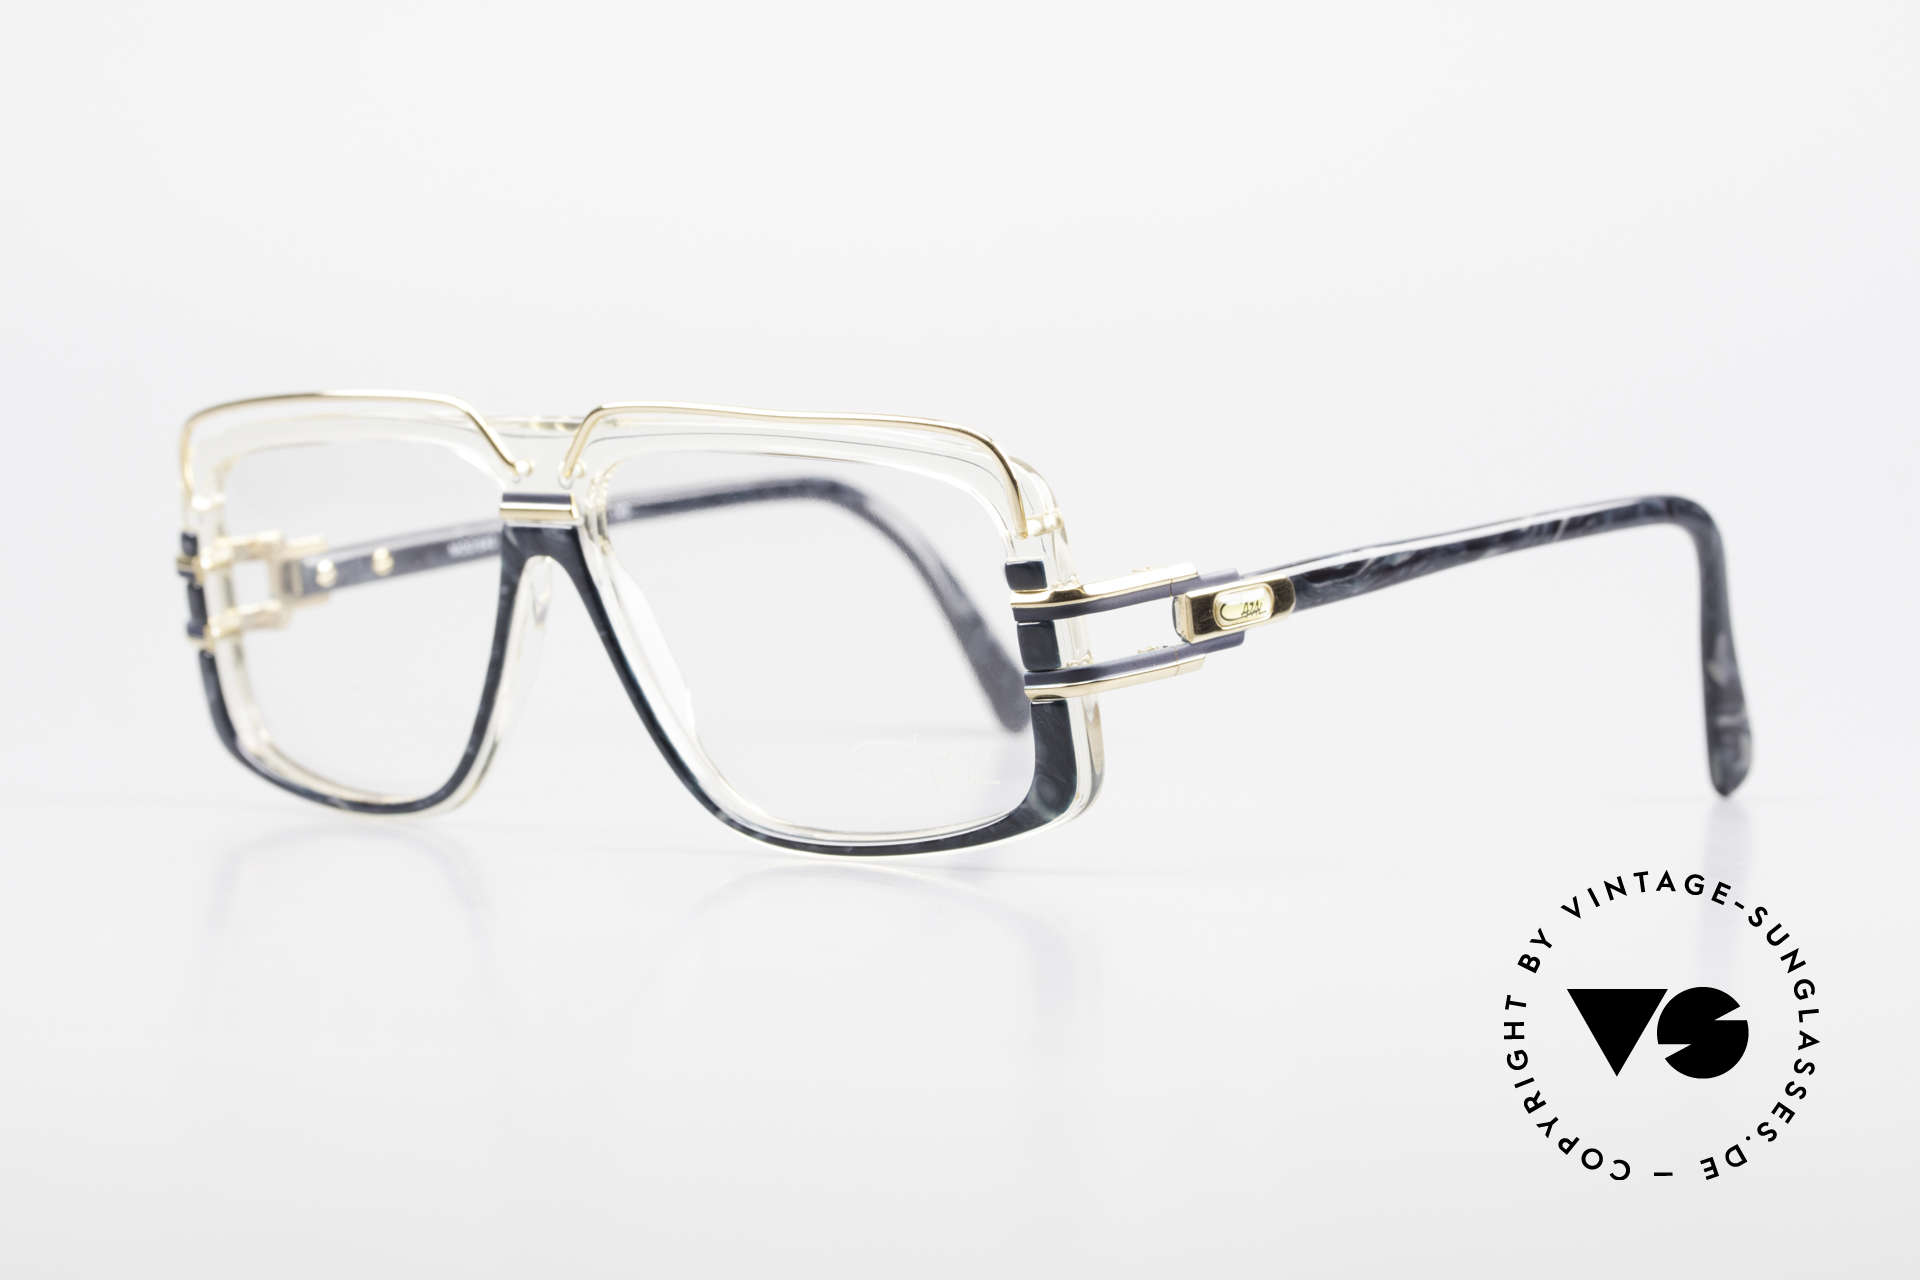 Cazal 640 80er Hip Hop Vintage Brille, wuchtig, kantig & markant: eine echte vintage CAZAL, Passend für Herren